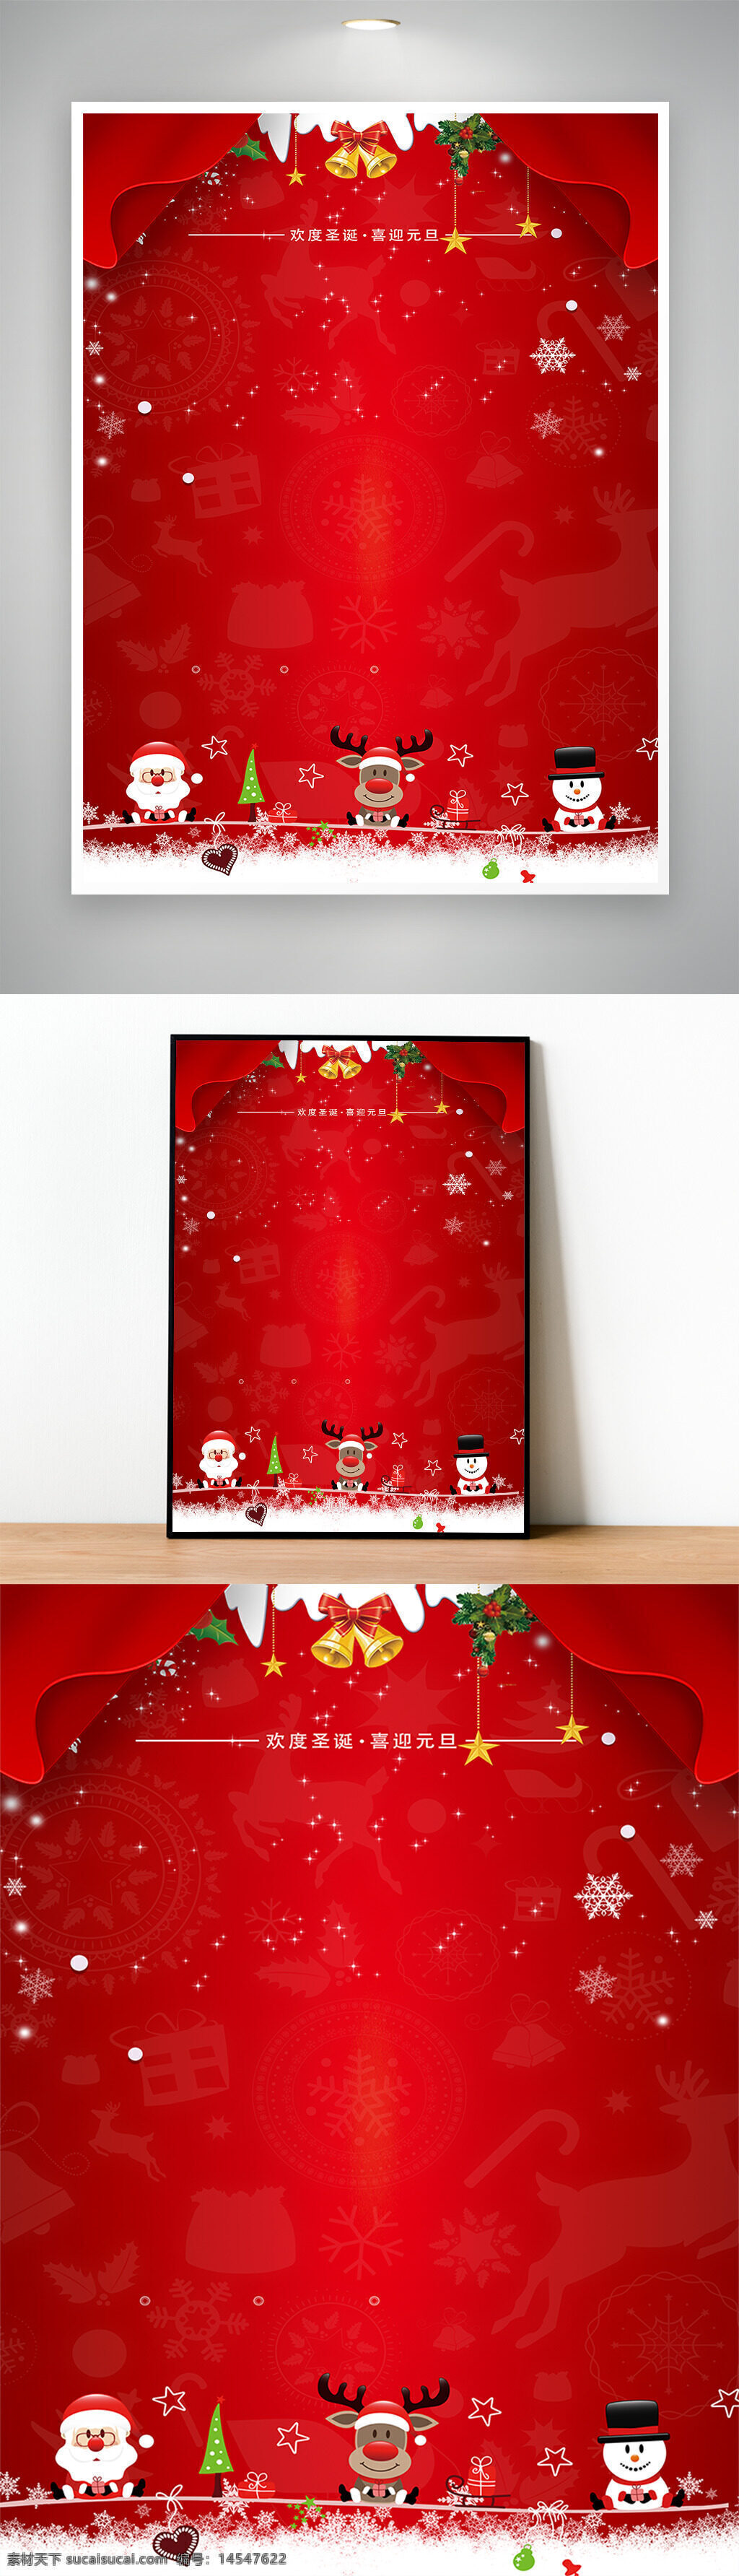 圣诞节 创意海报 节日 红色 冬天